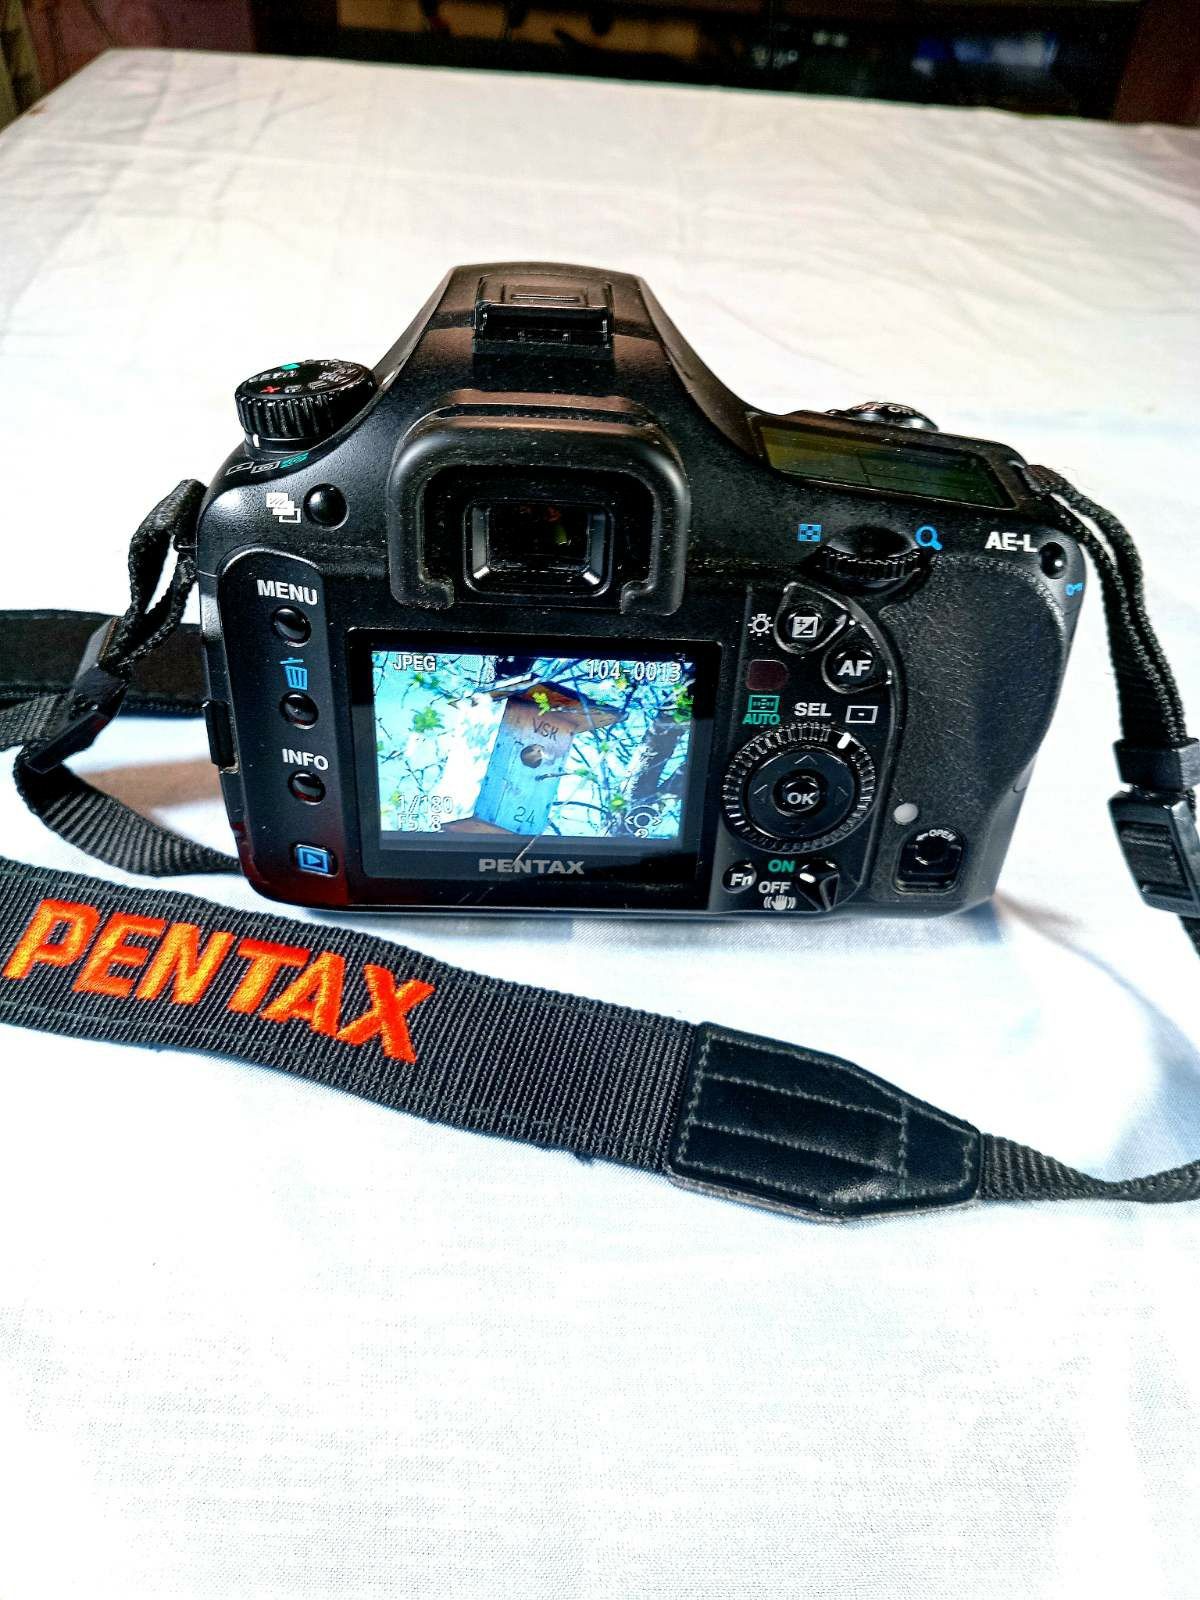 Pentax k10 d 18-55, 55-300